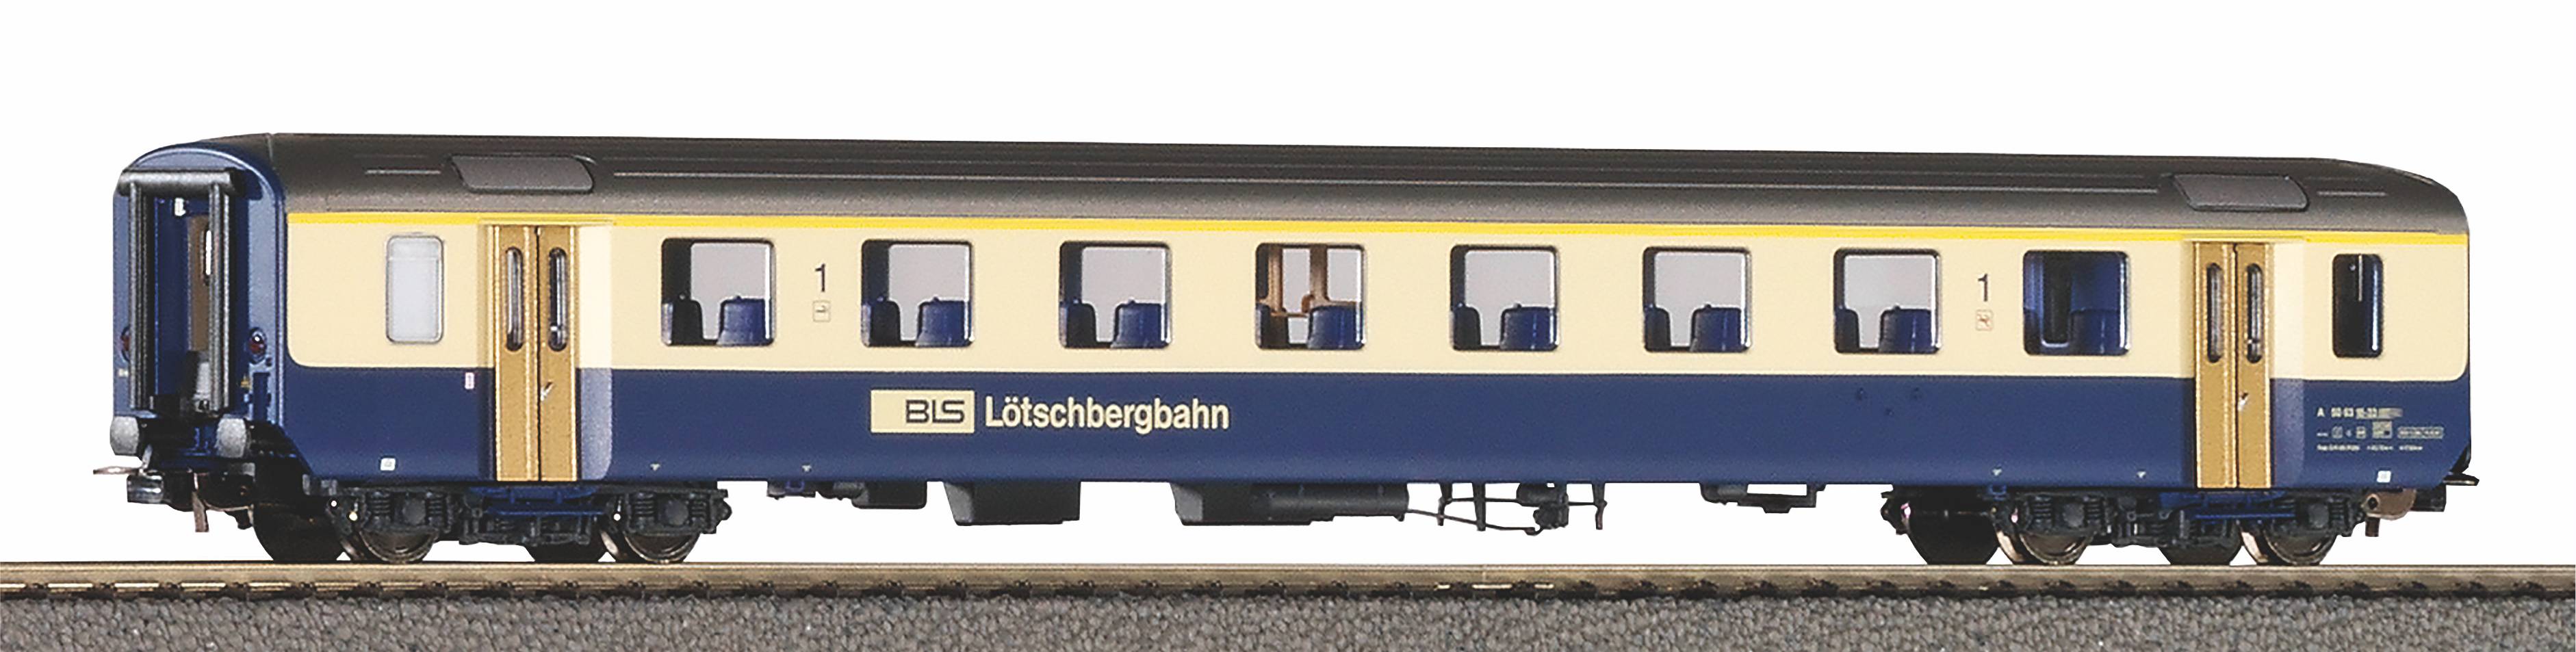 Piko 96087 H0 BLS EW I rijtuig 1e klas Lötschbergbahn